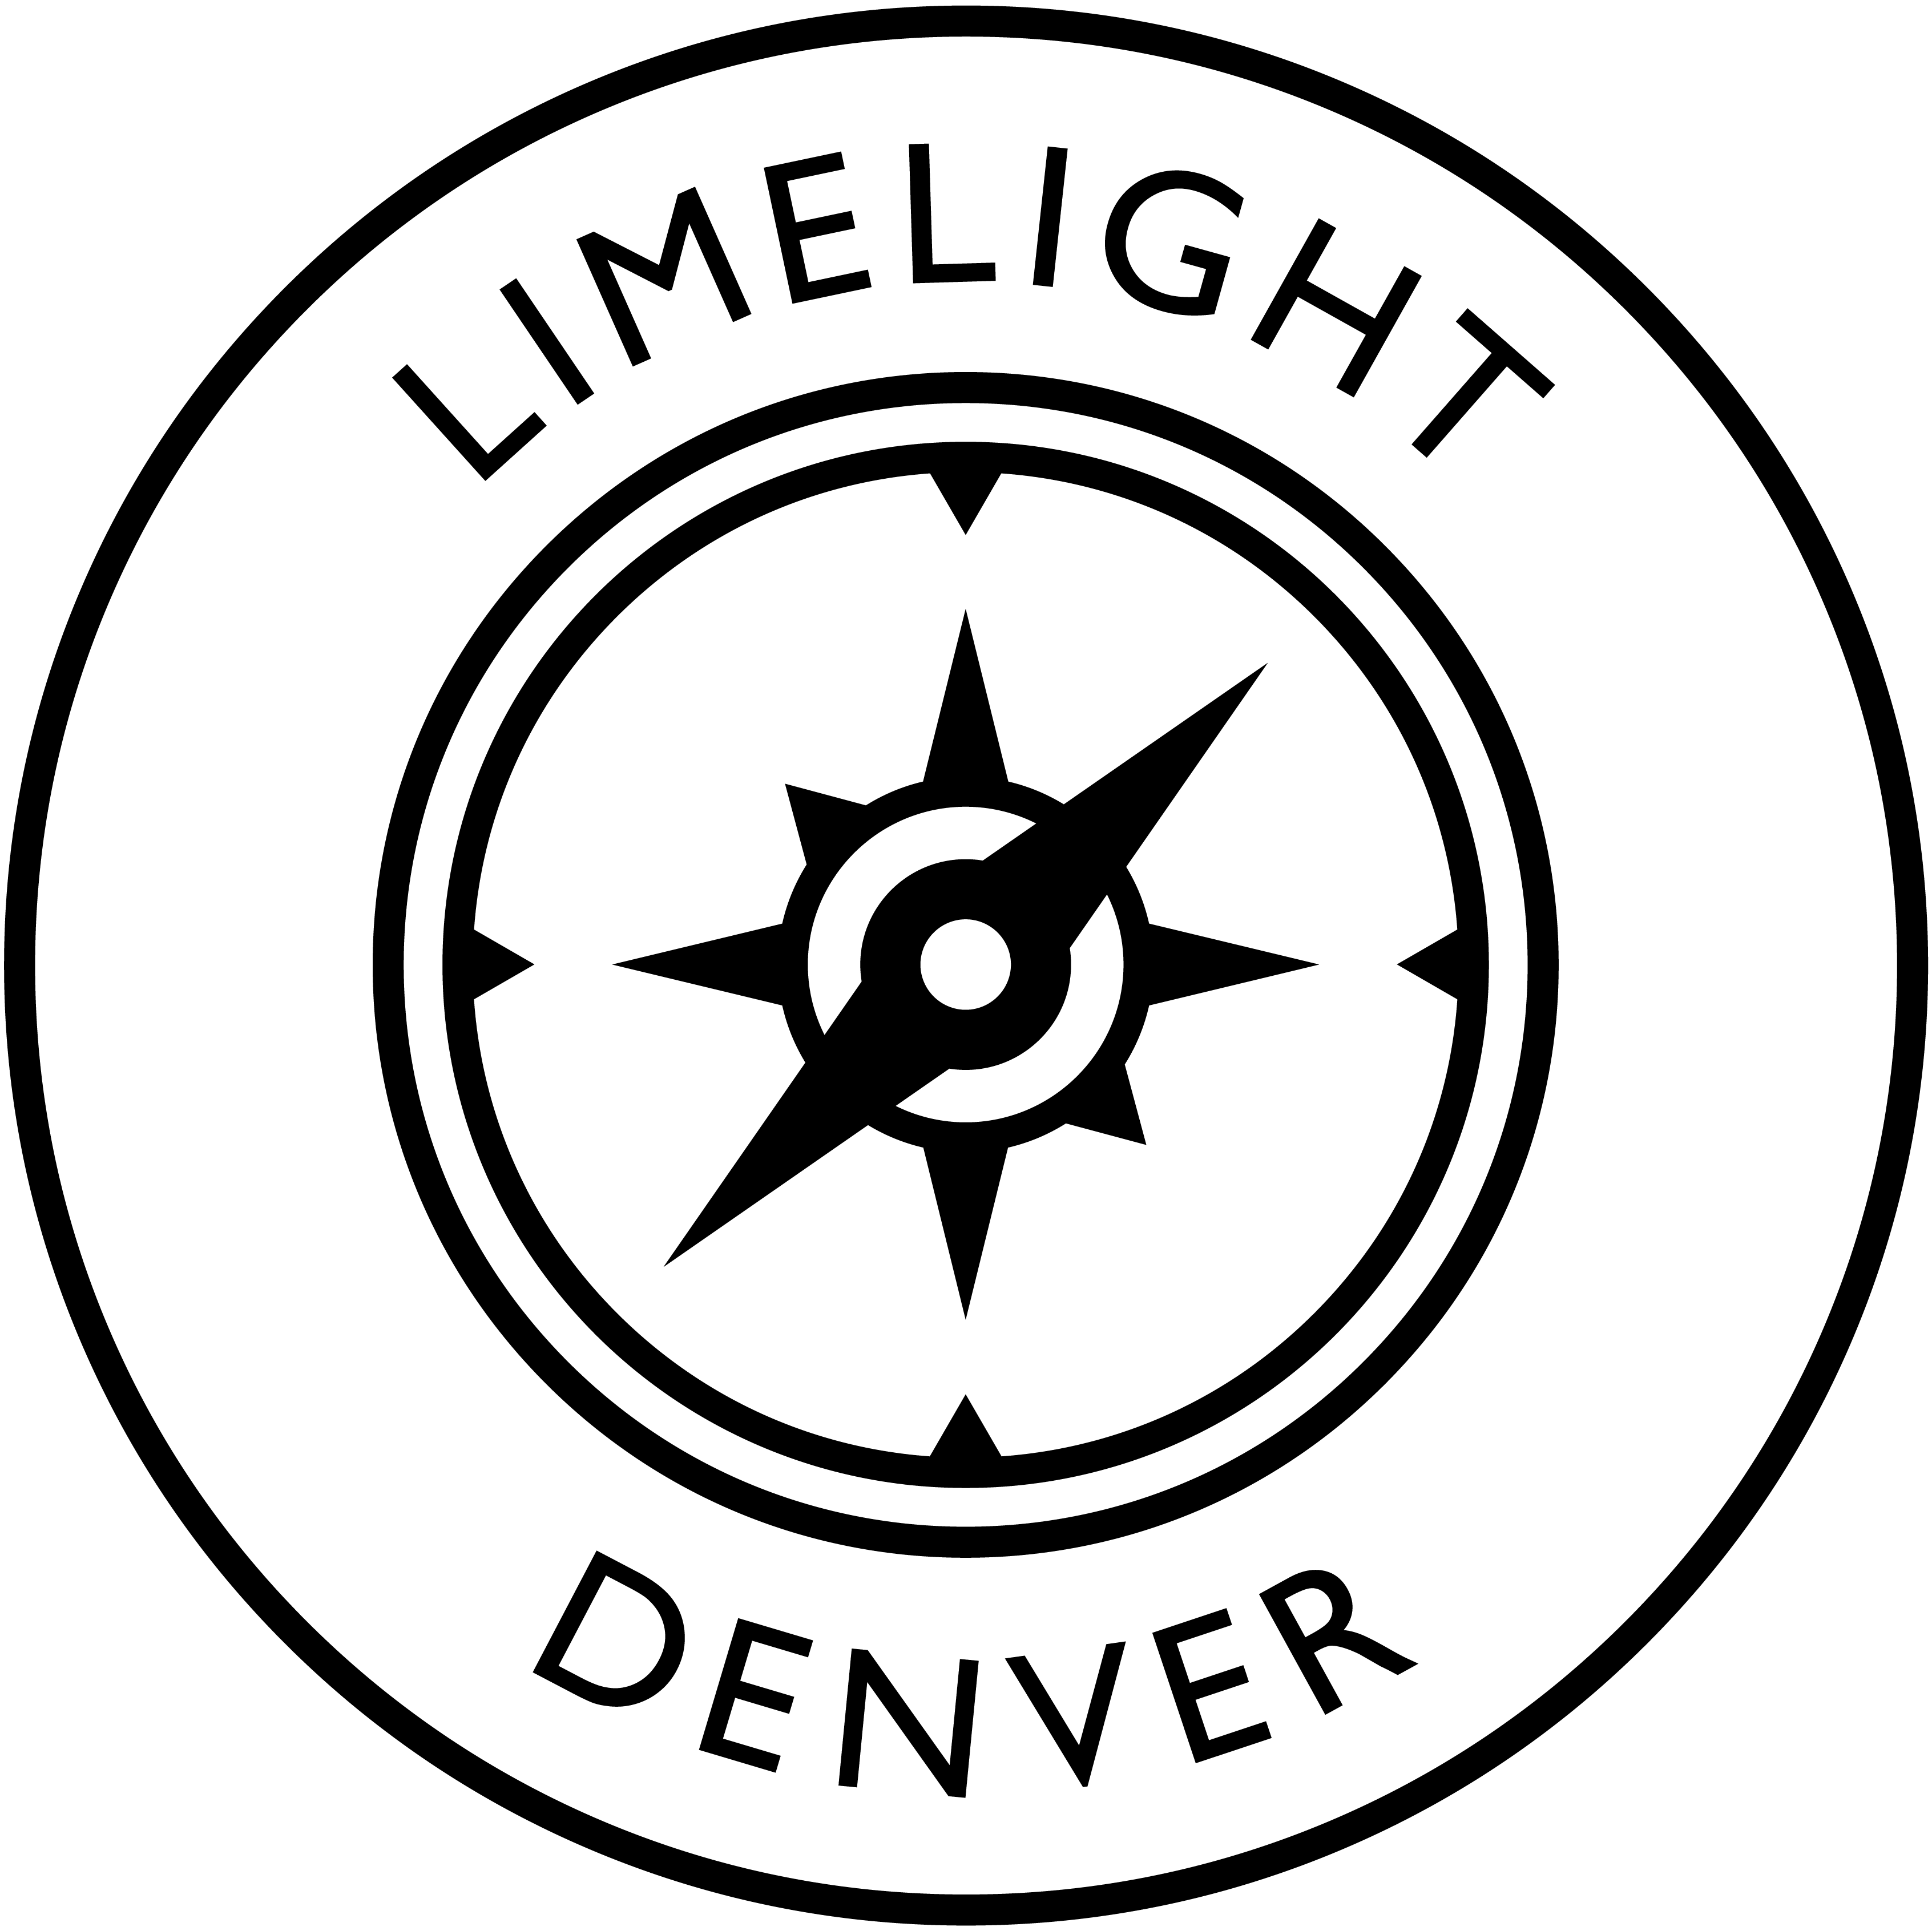 Limelight Denver Compass Logo